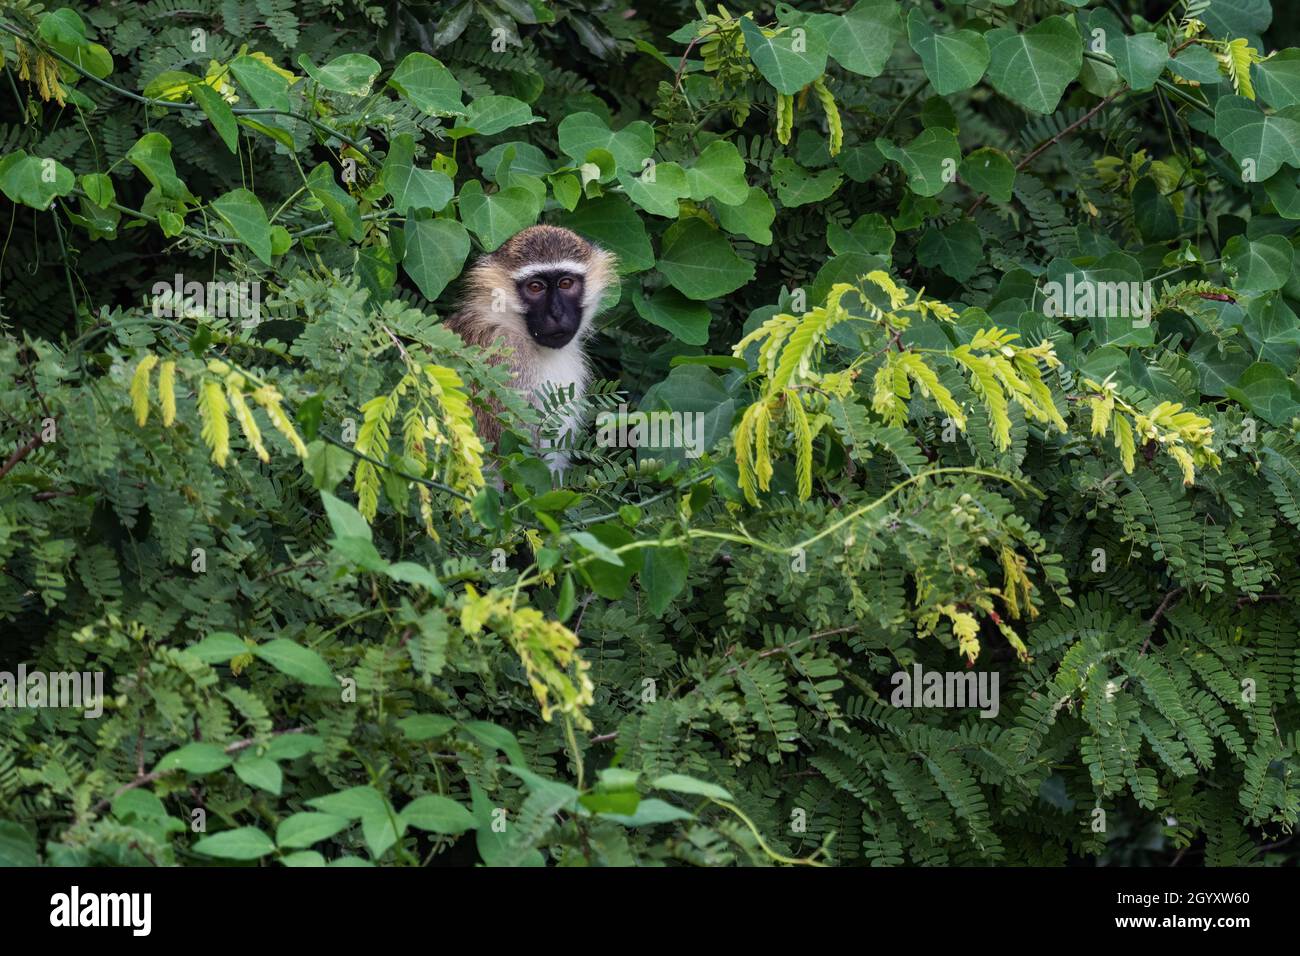 Grüner Affe - Chlorocebus aethiops, schöner populärer Affe aus westafrikanischen Büschen und Wäldern, Murchison Falls, Uganda. Stockfoto